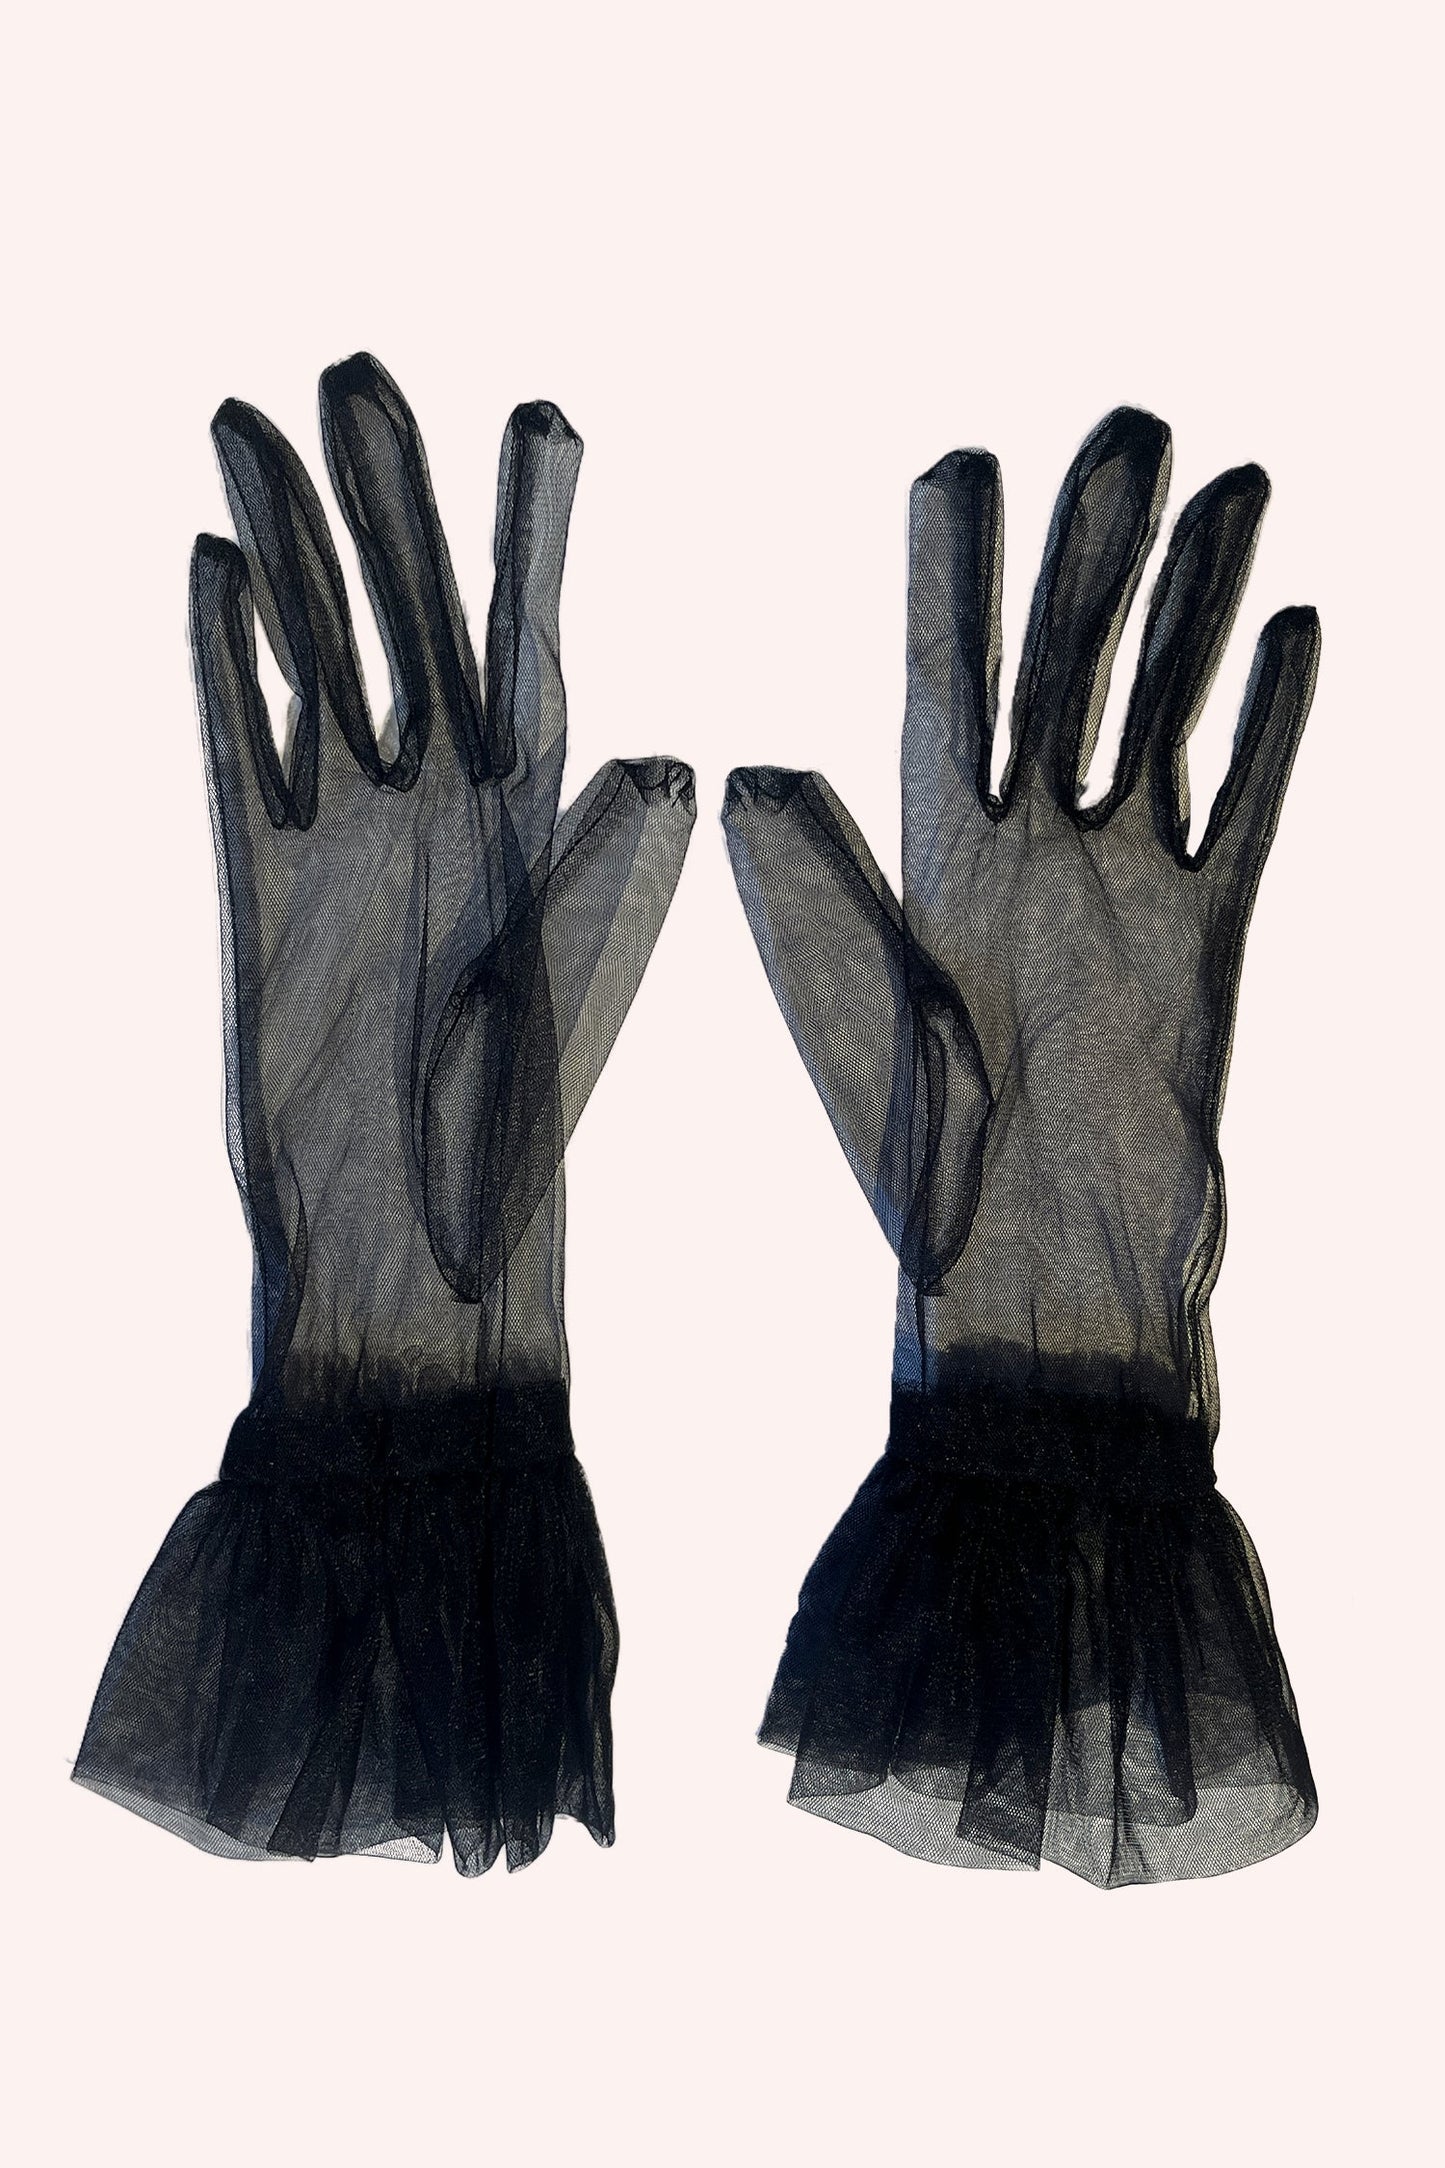 Tüllhandschuhe Schwarz, transparent, mit Rüscheneffekt am Handgelenk